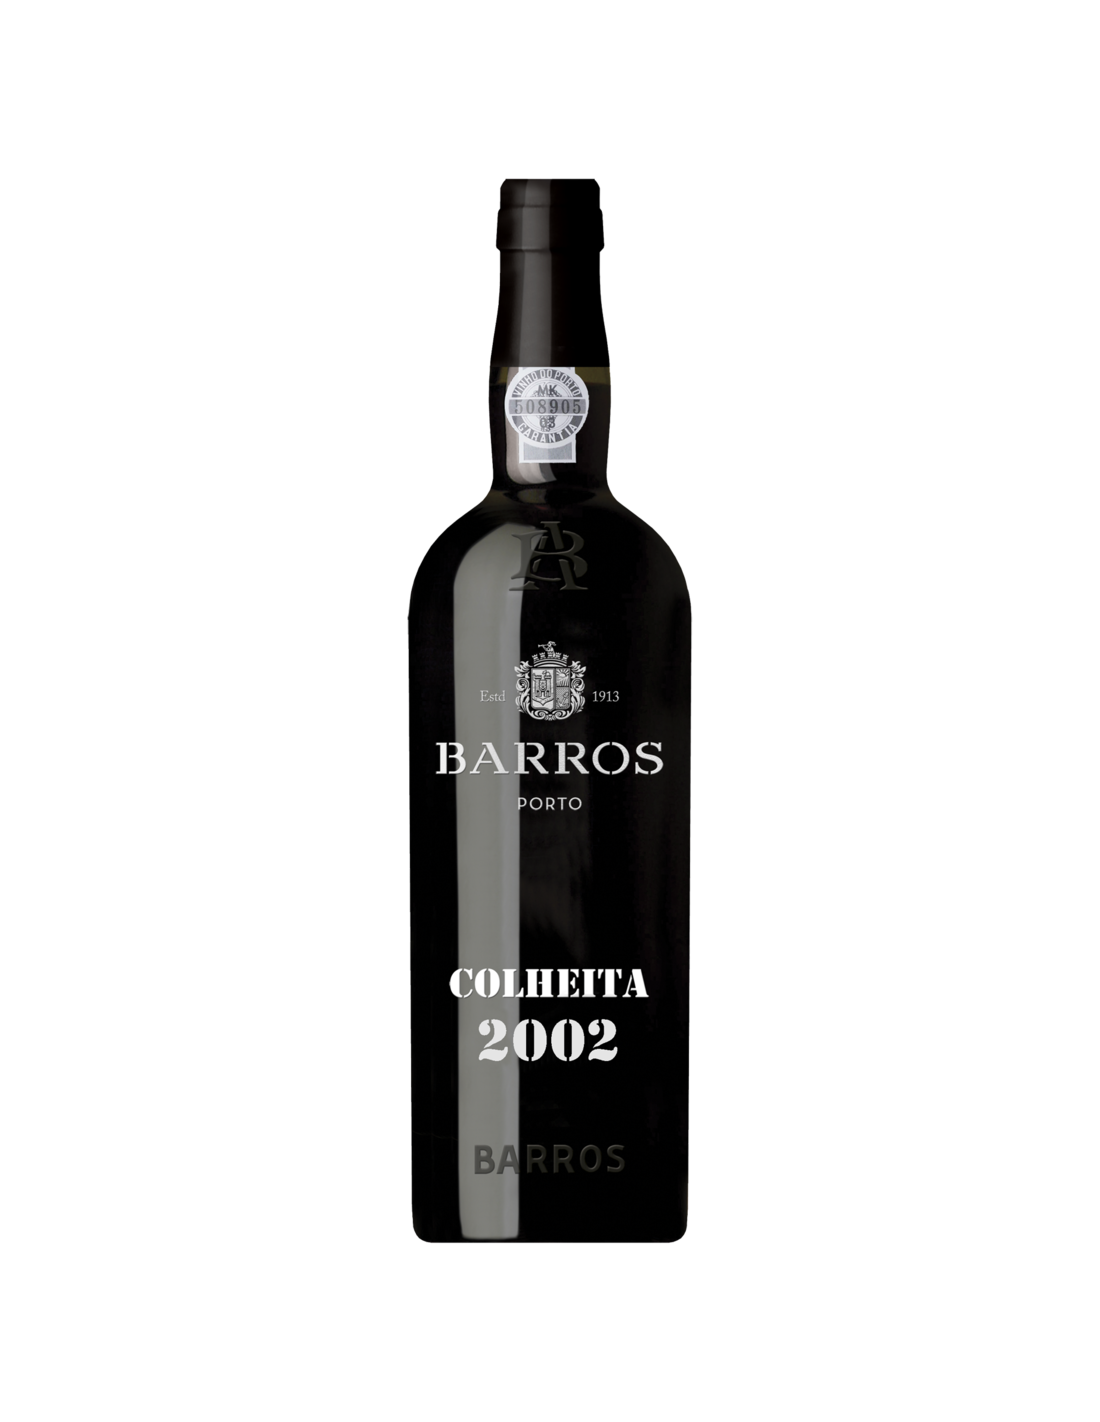 Vin porto rosu dulce, Cupaj, Barros Colheita, 2002, 0.75L, 20% alc., Portugalia alcooldiscount.ro